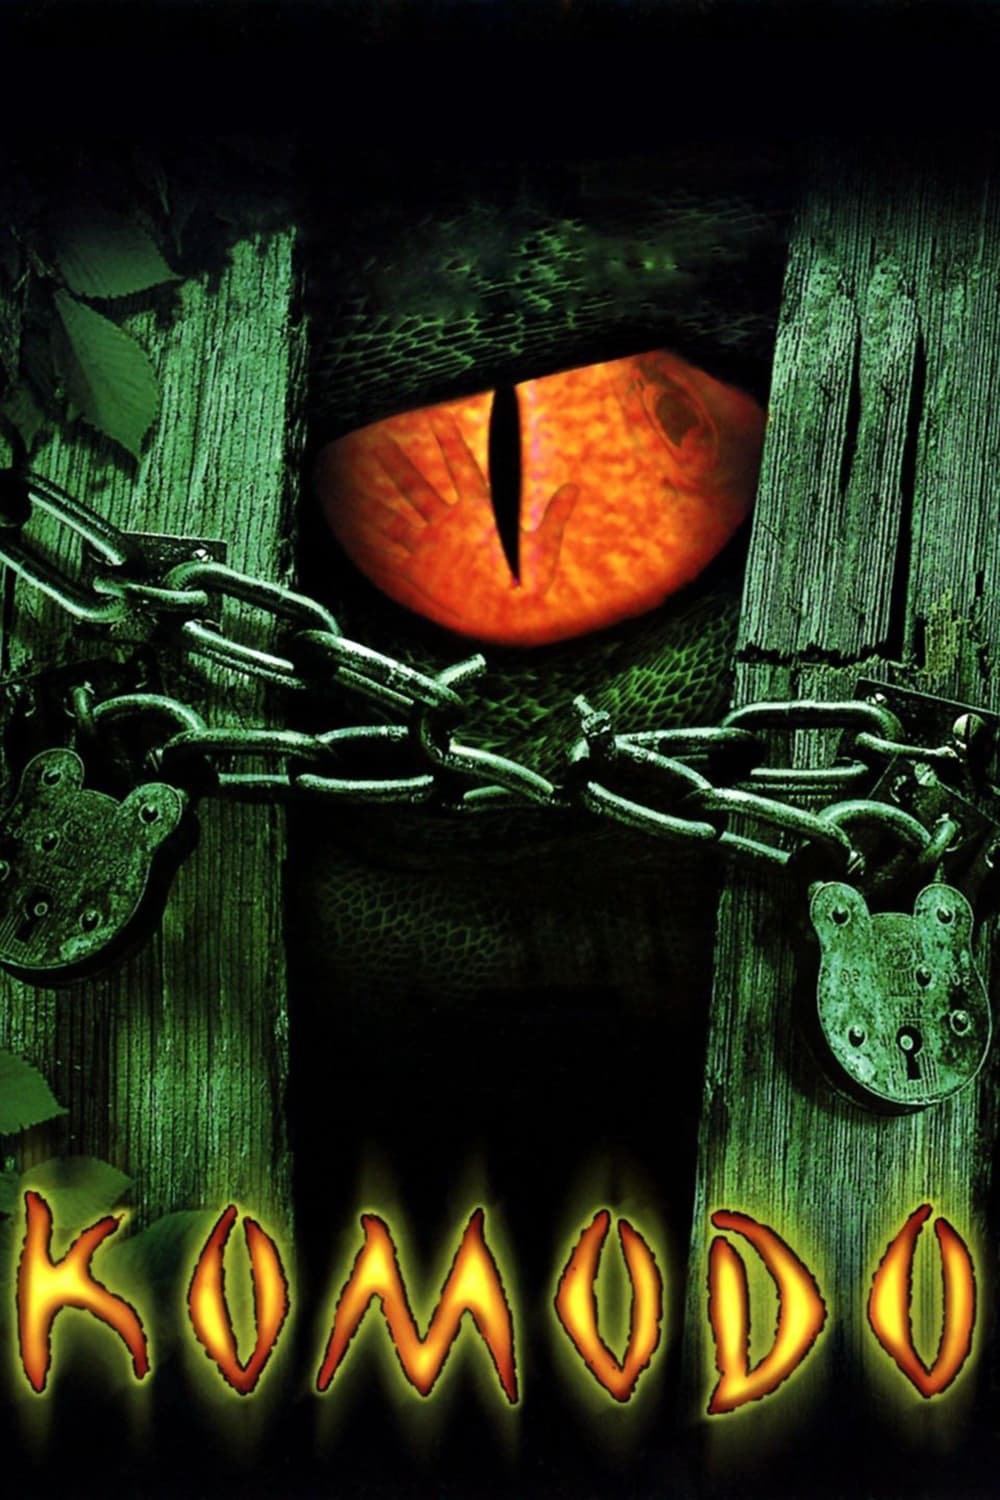 Komodo (1999)